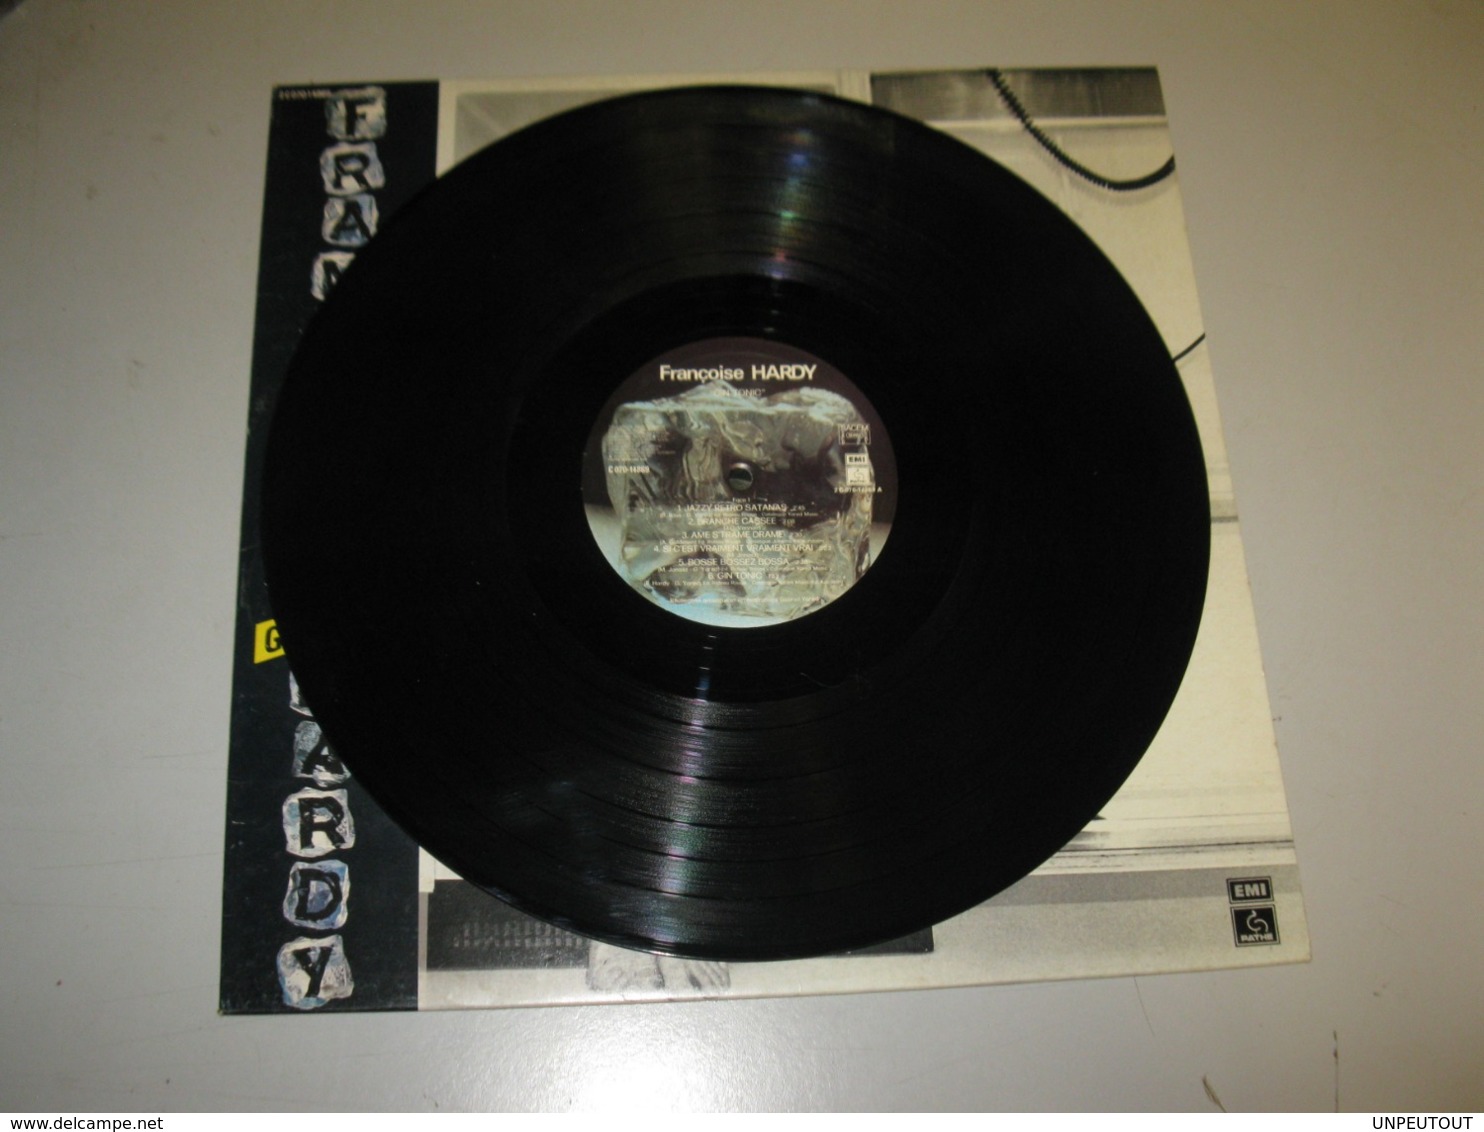 VINYLE FRANCOISE HARDY "GIN TONIC" 33 T PATHE / EMI (1980) - Autres - Musique Française